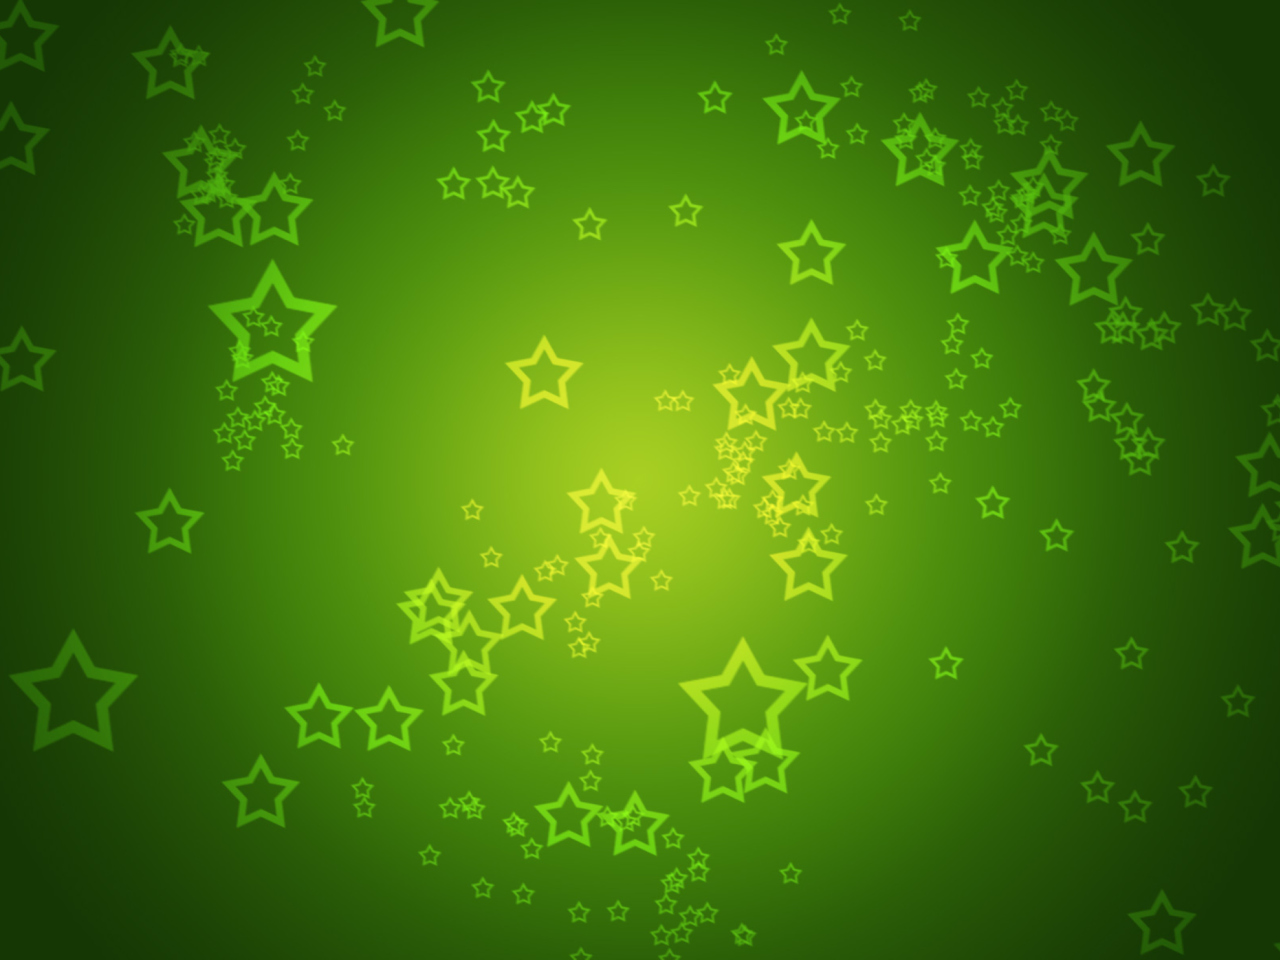 Das Green Stars Wallpaper 1280x960